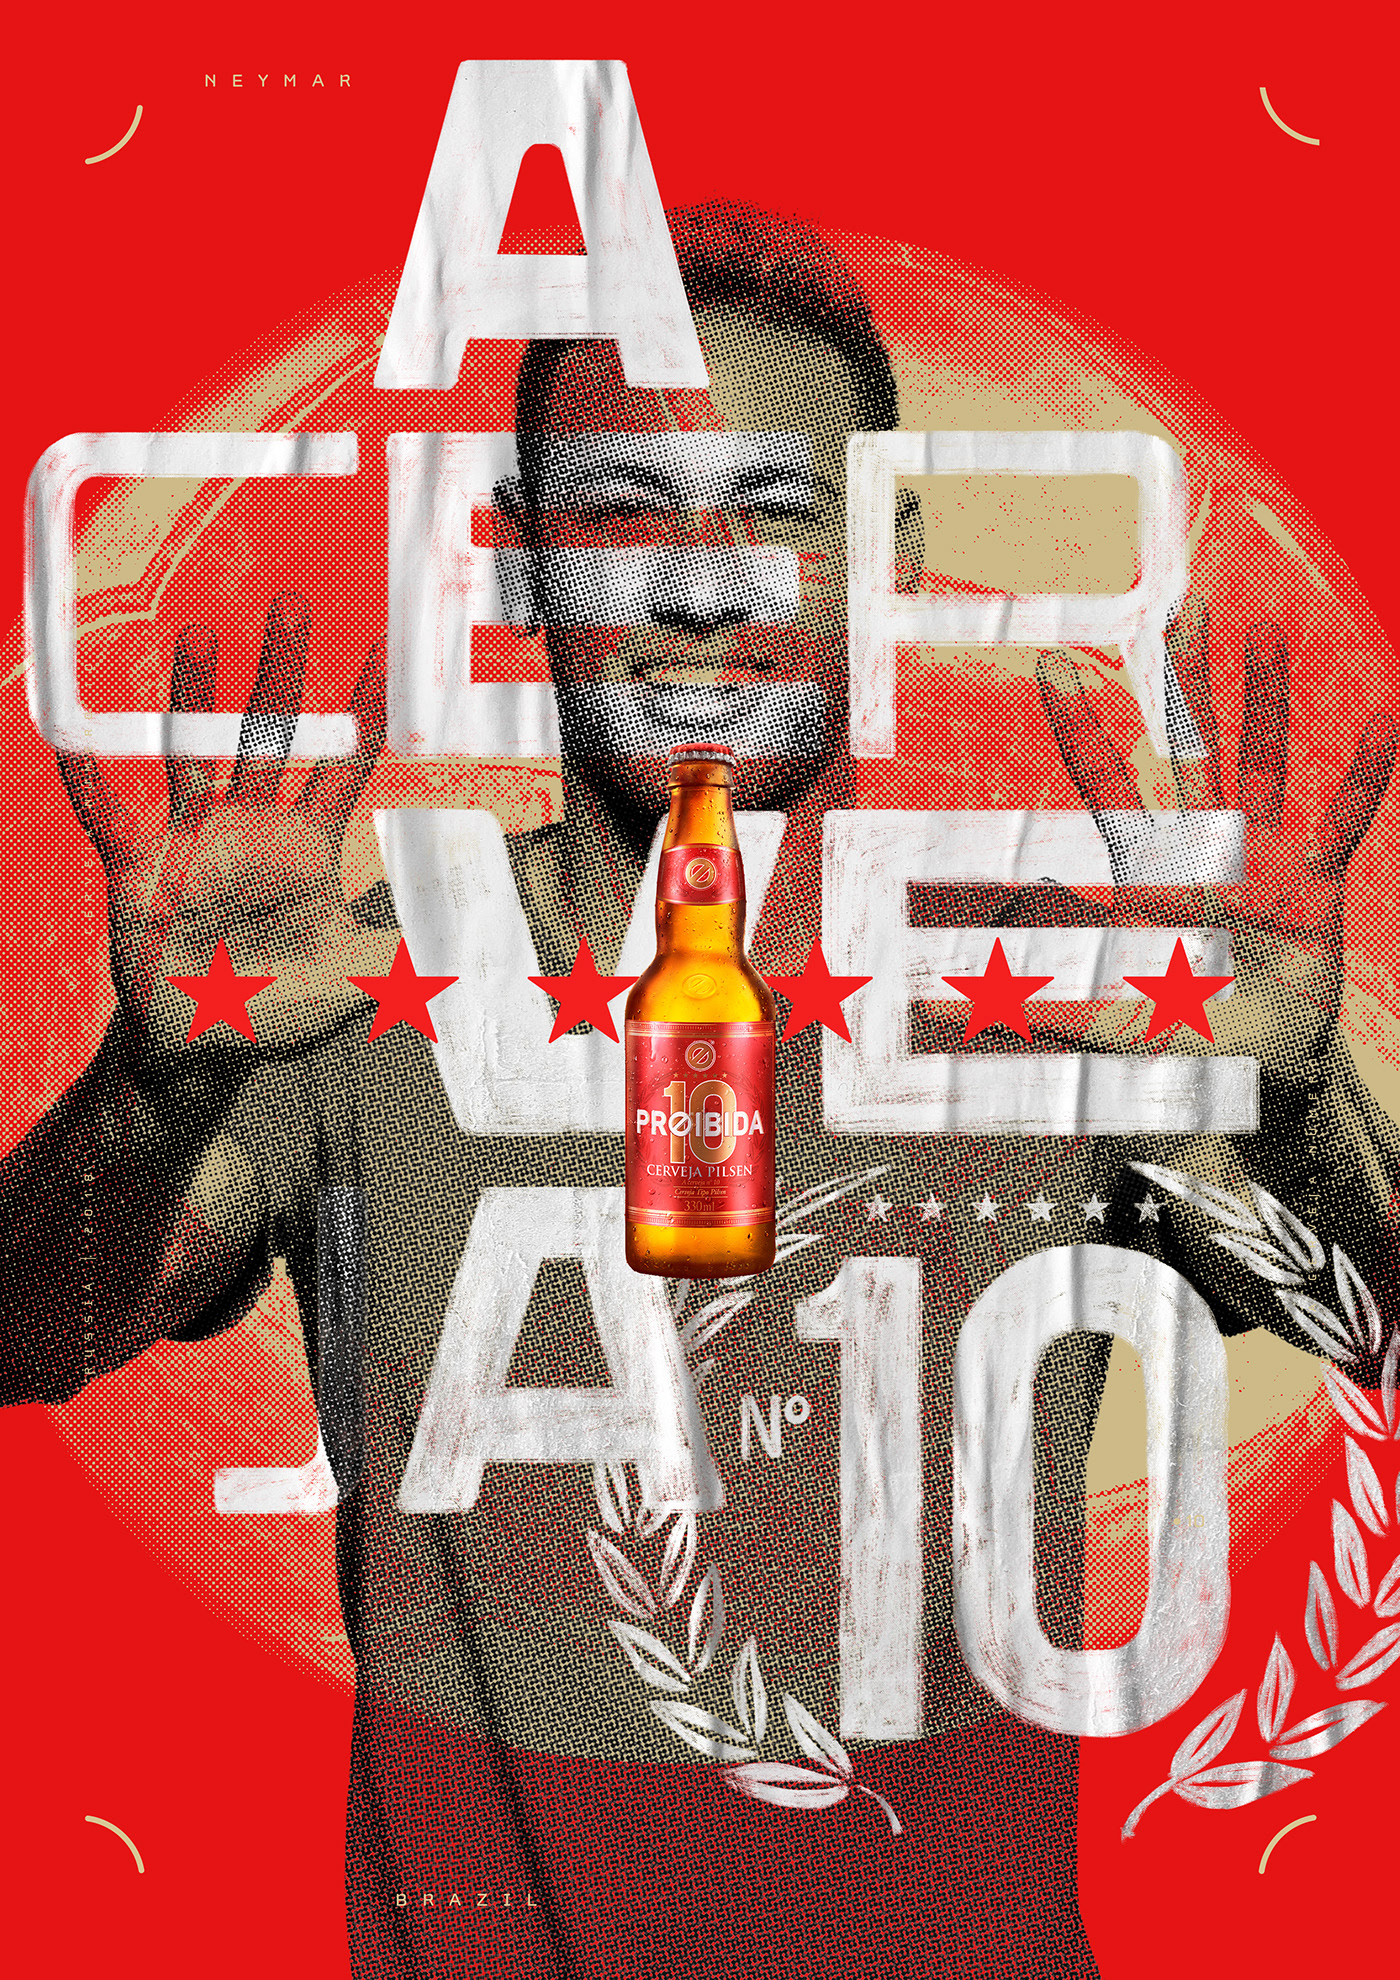 beer Cerveja design Neymar cerveja 10 beer 10